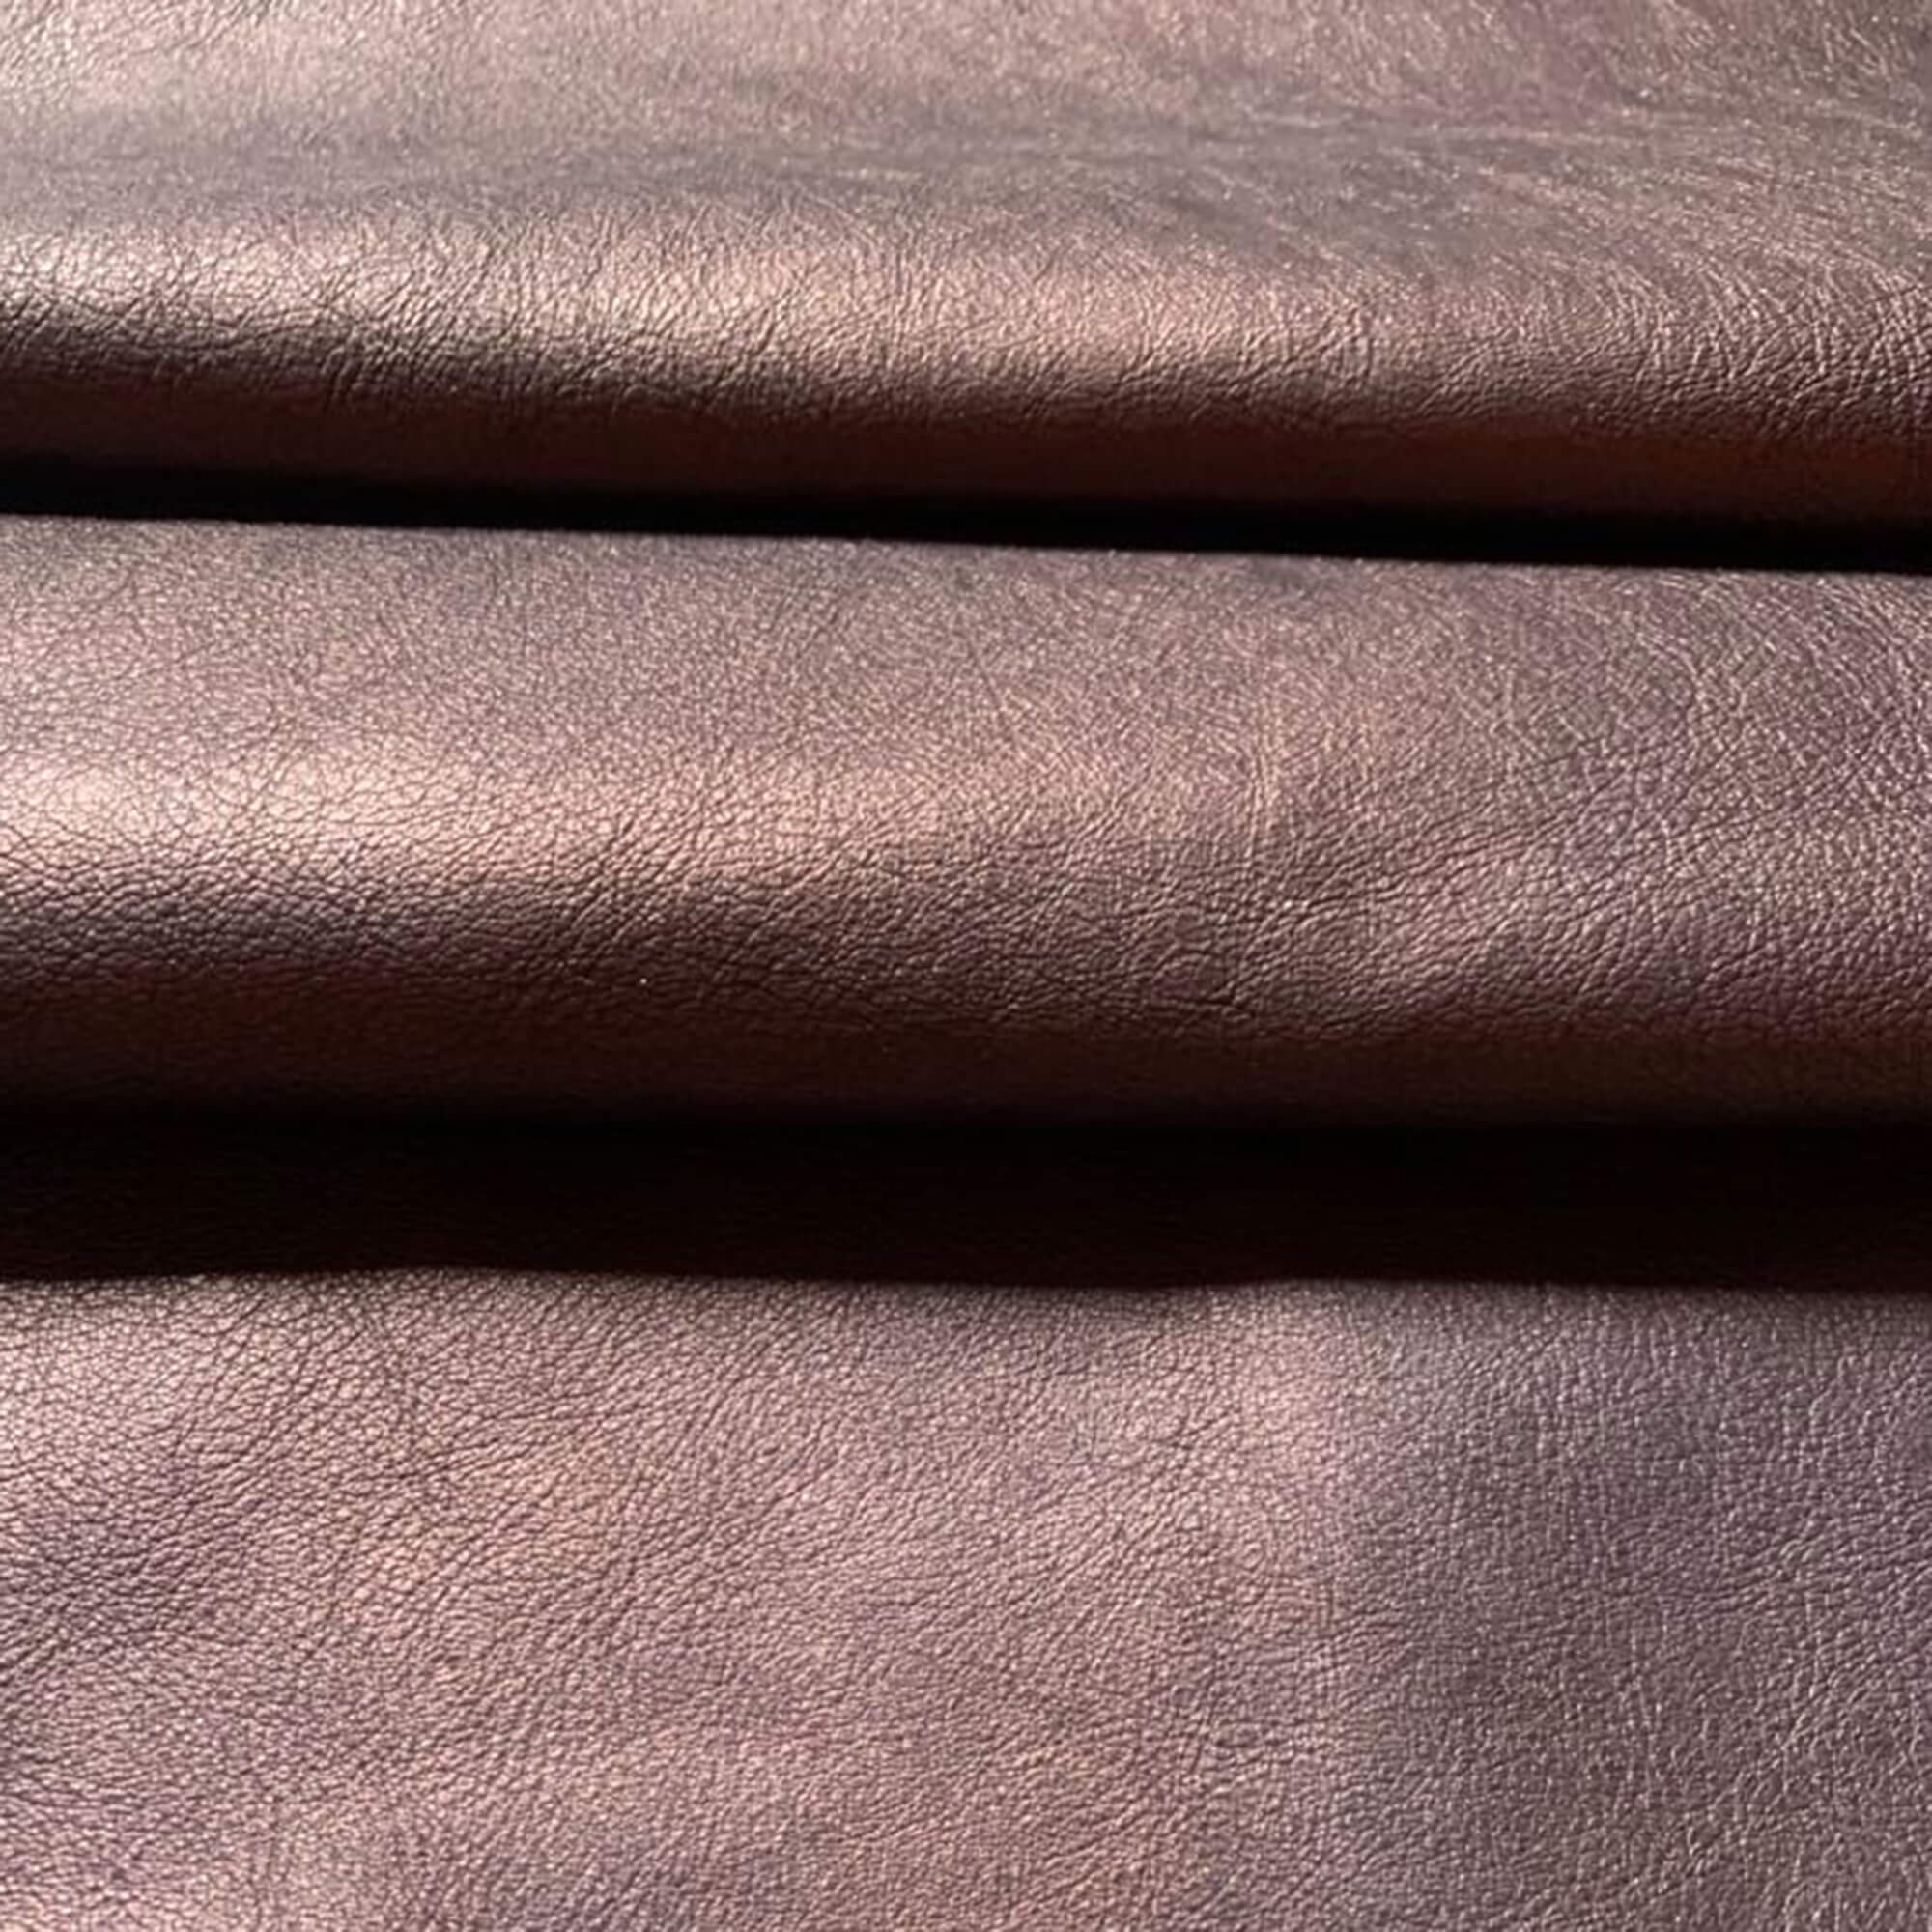 Buy online genuine leather skins 